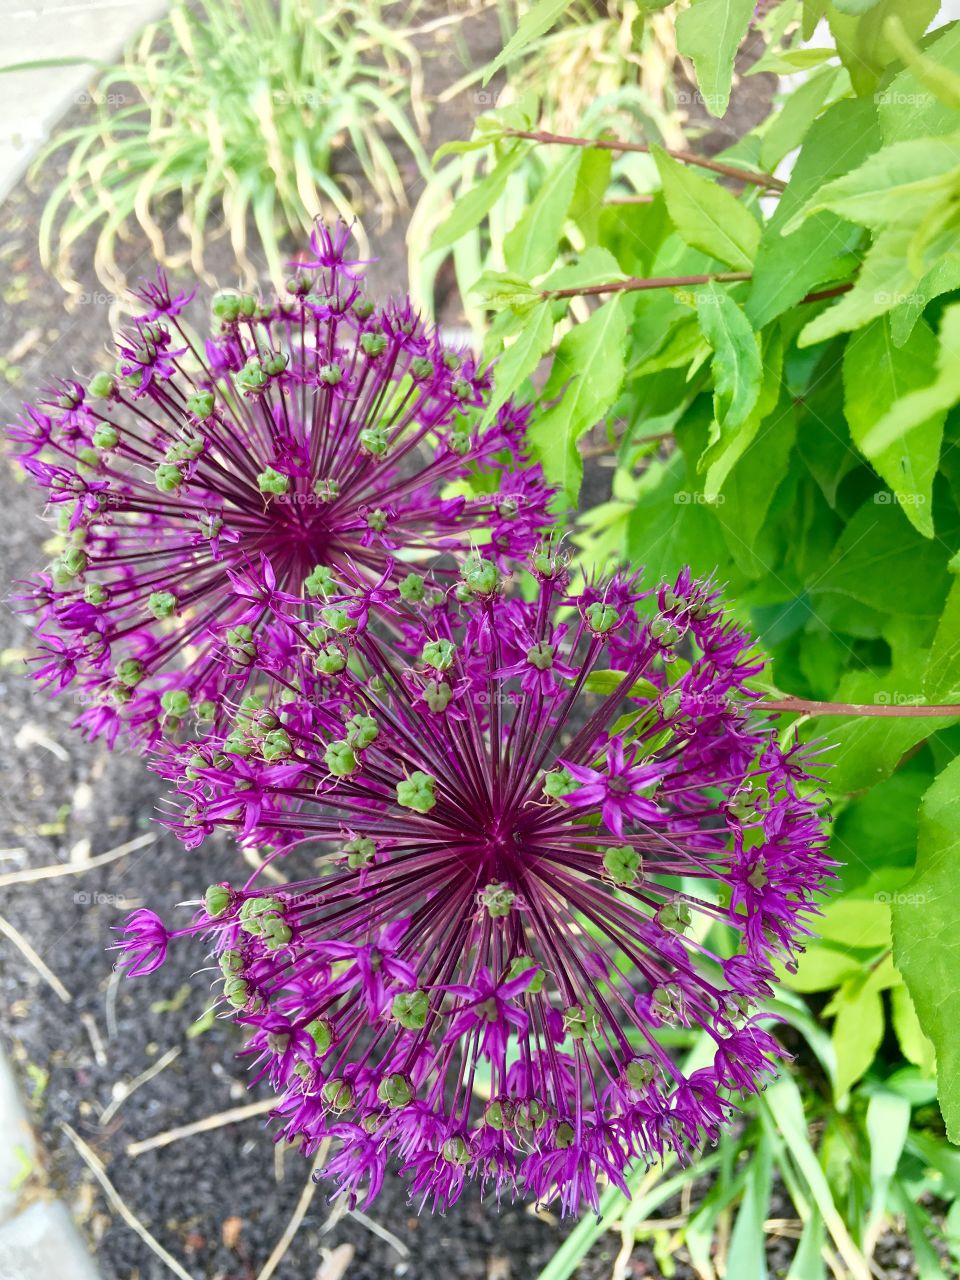 Purple Pom Pom flowers